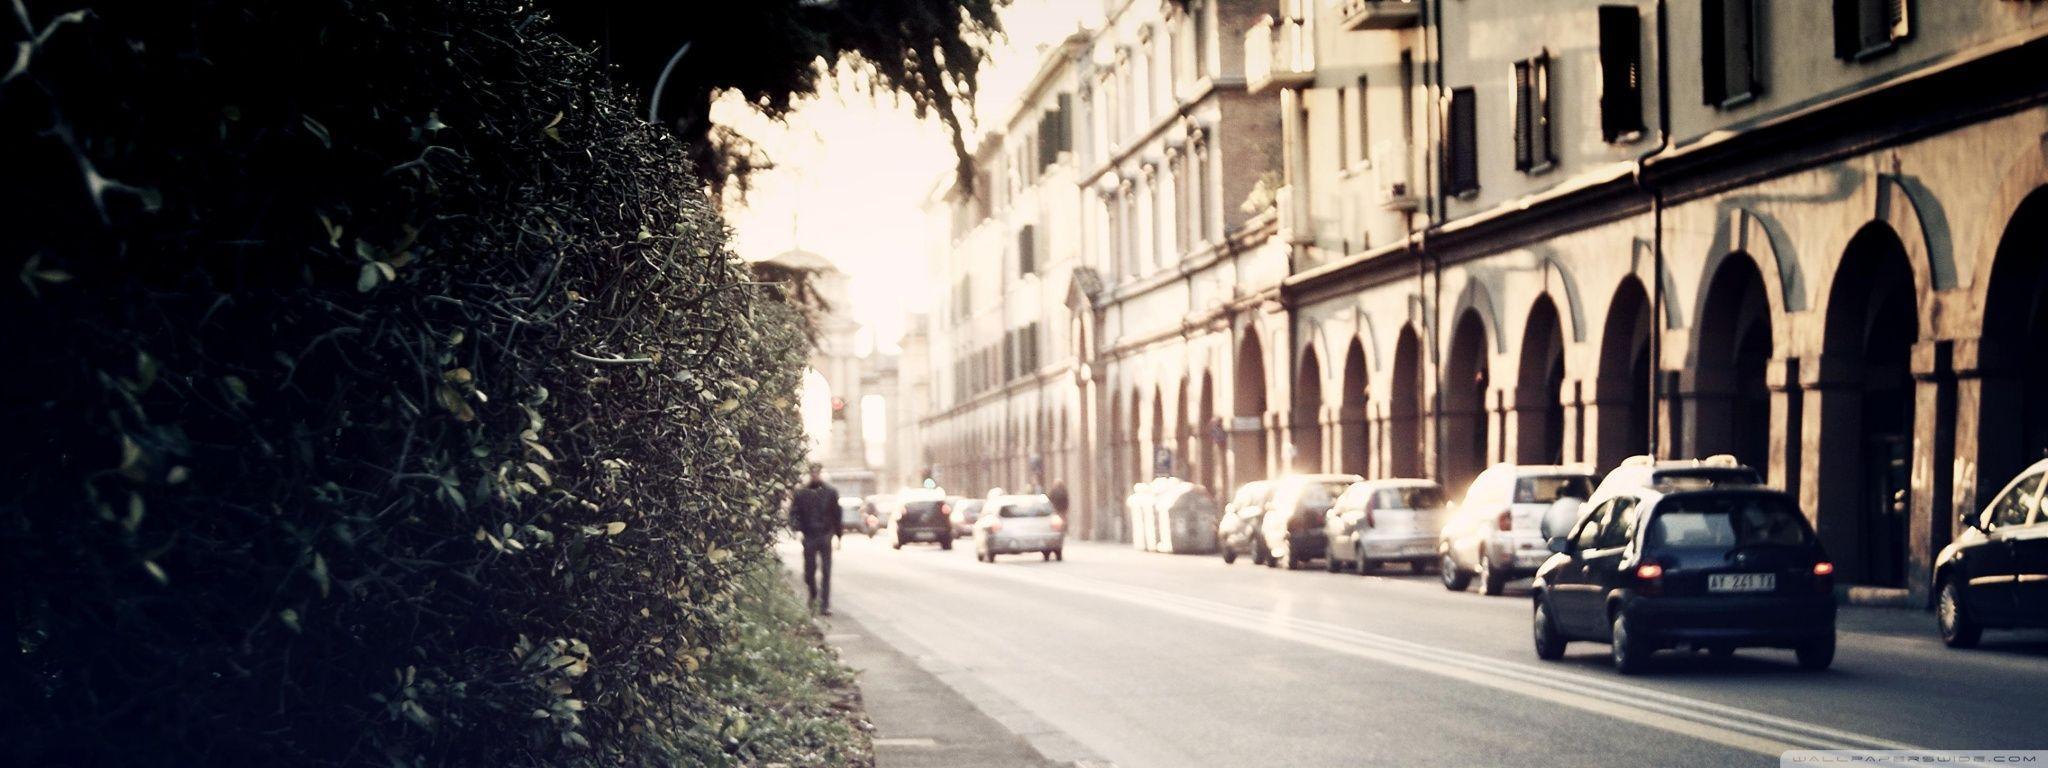 Street In Italy HD desktop wallpaper, High Definition